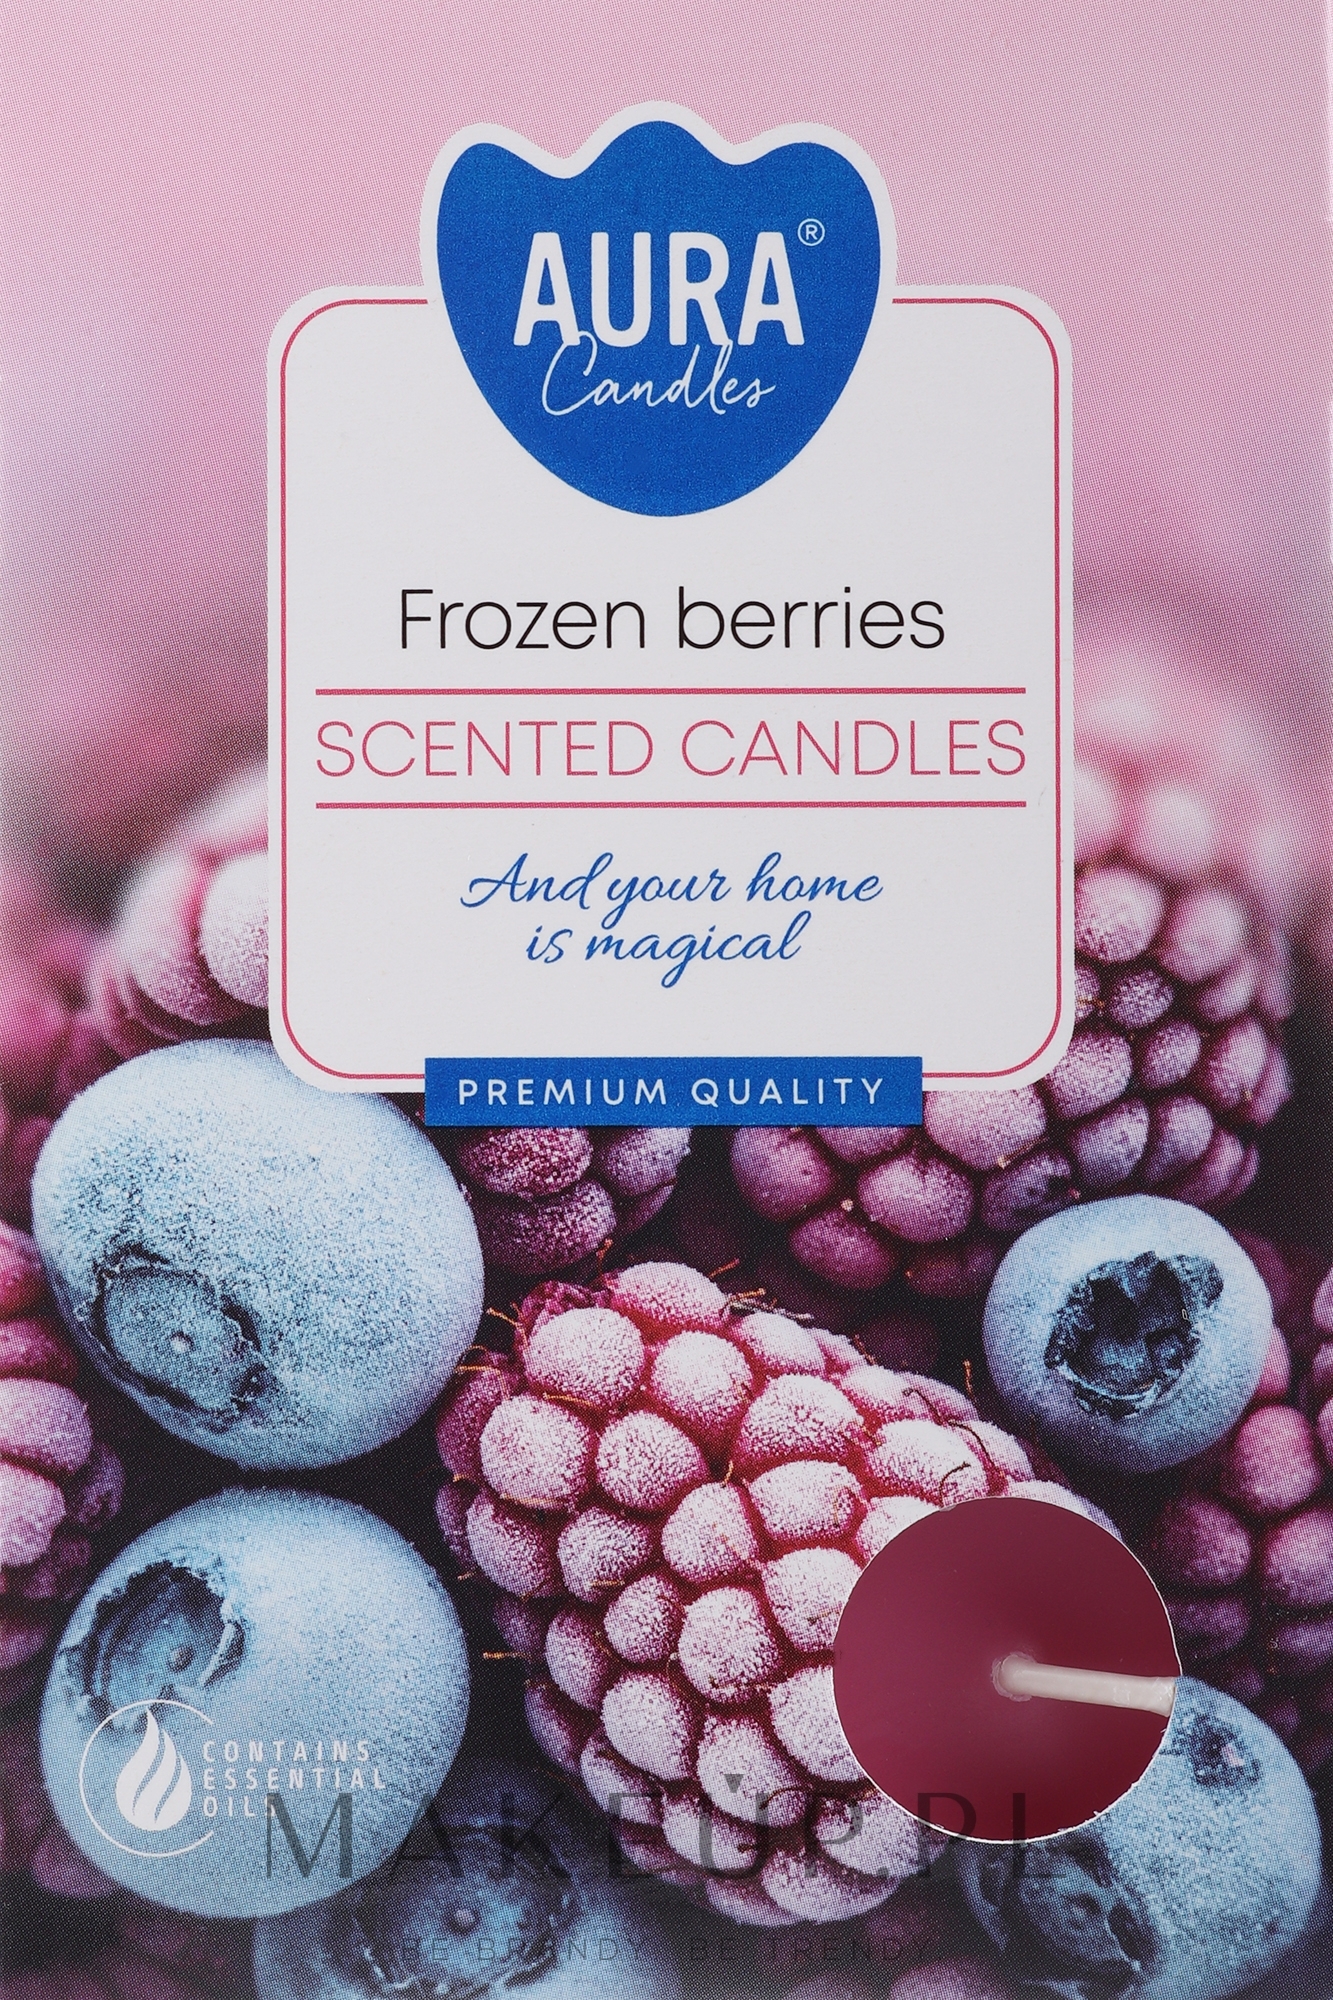 Zestaw podgrzewaczy Mrożone jagody - Bispol Frozen Berries Scented Candles — Zdjęcie 6 szt.